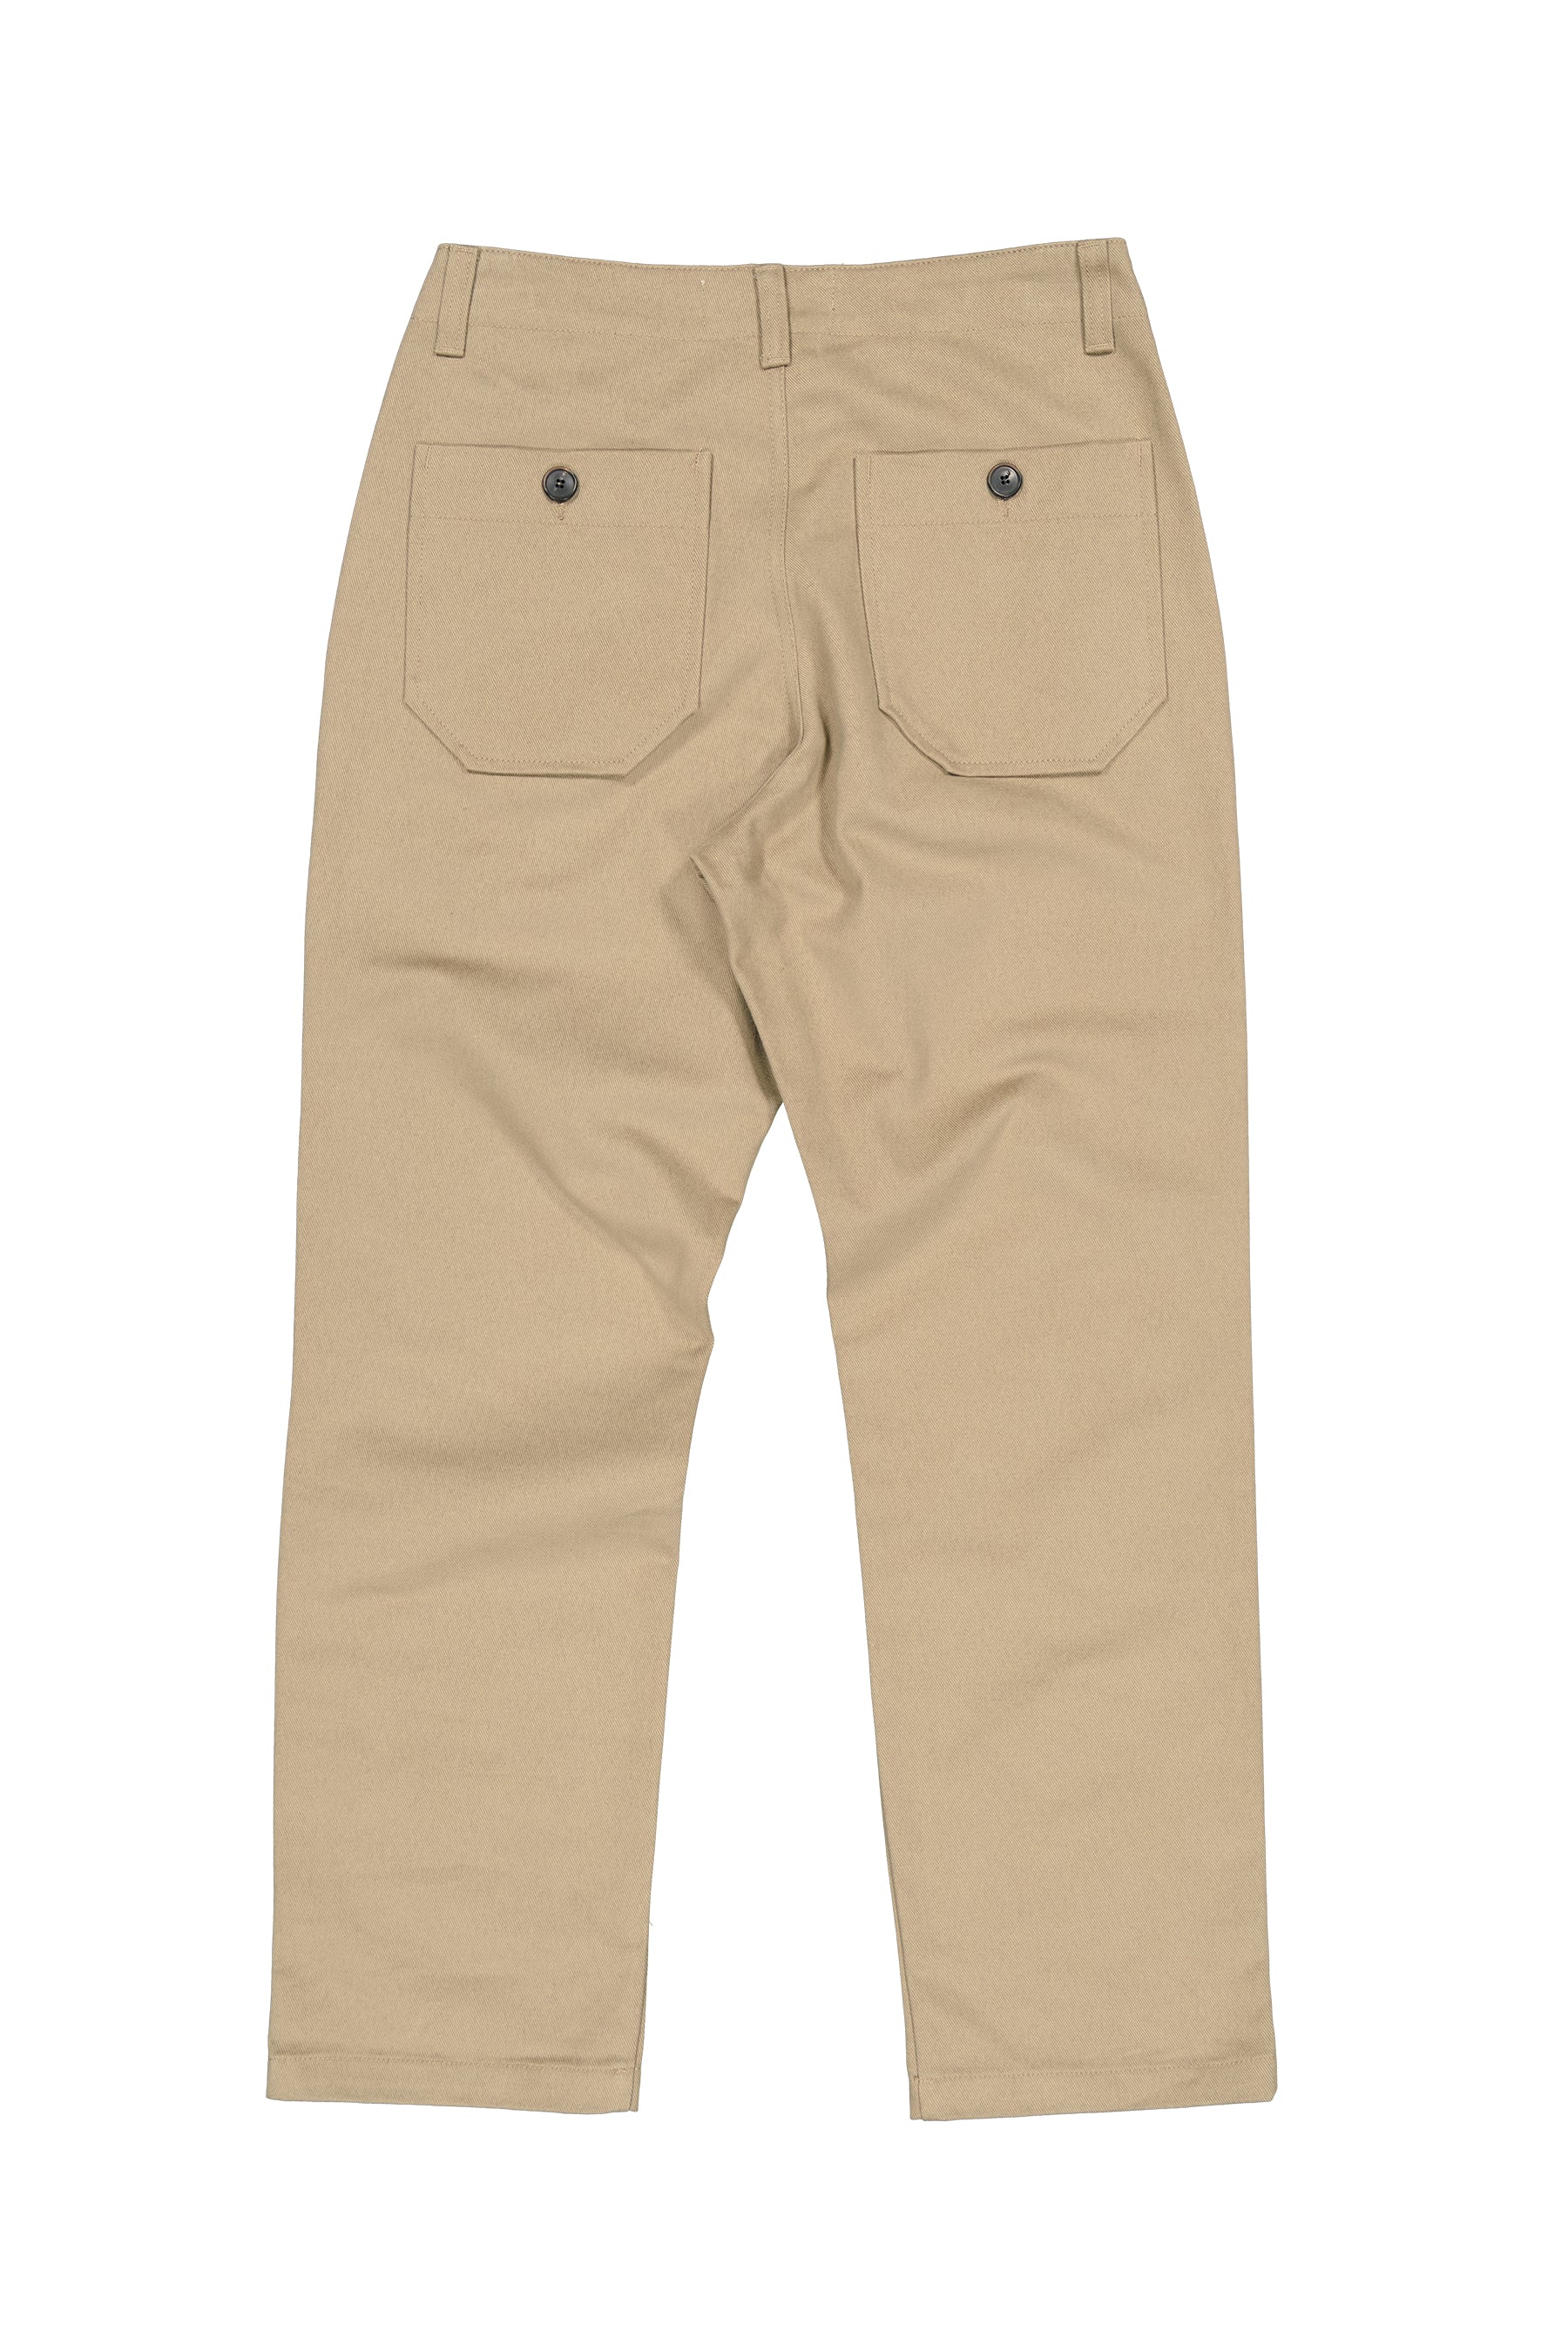 dock-twill-pantalon-workwear-beige